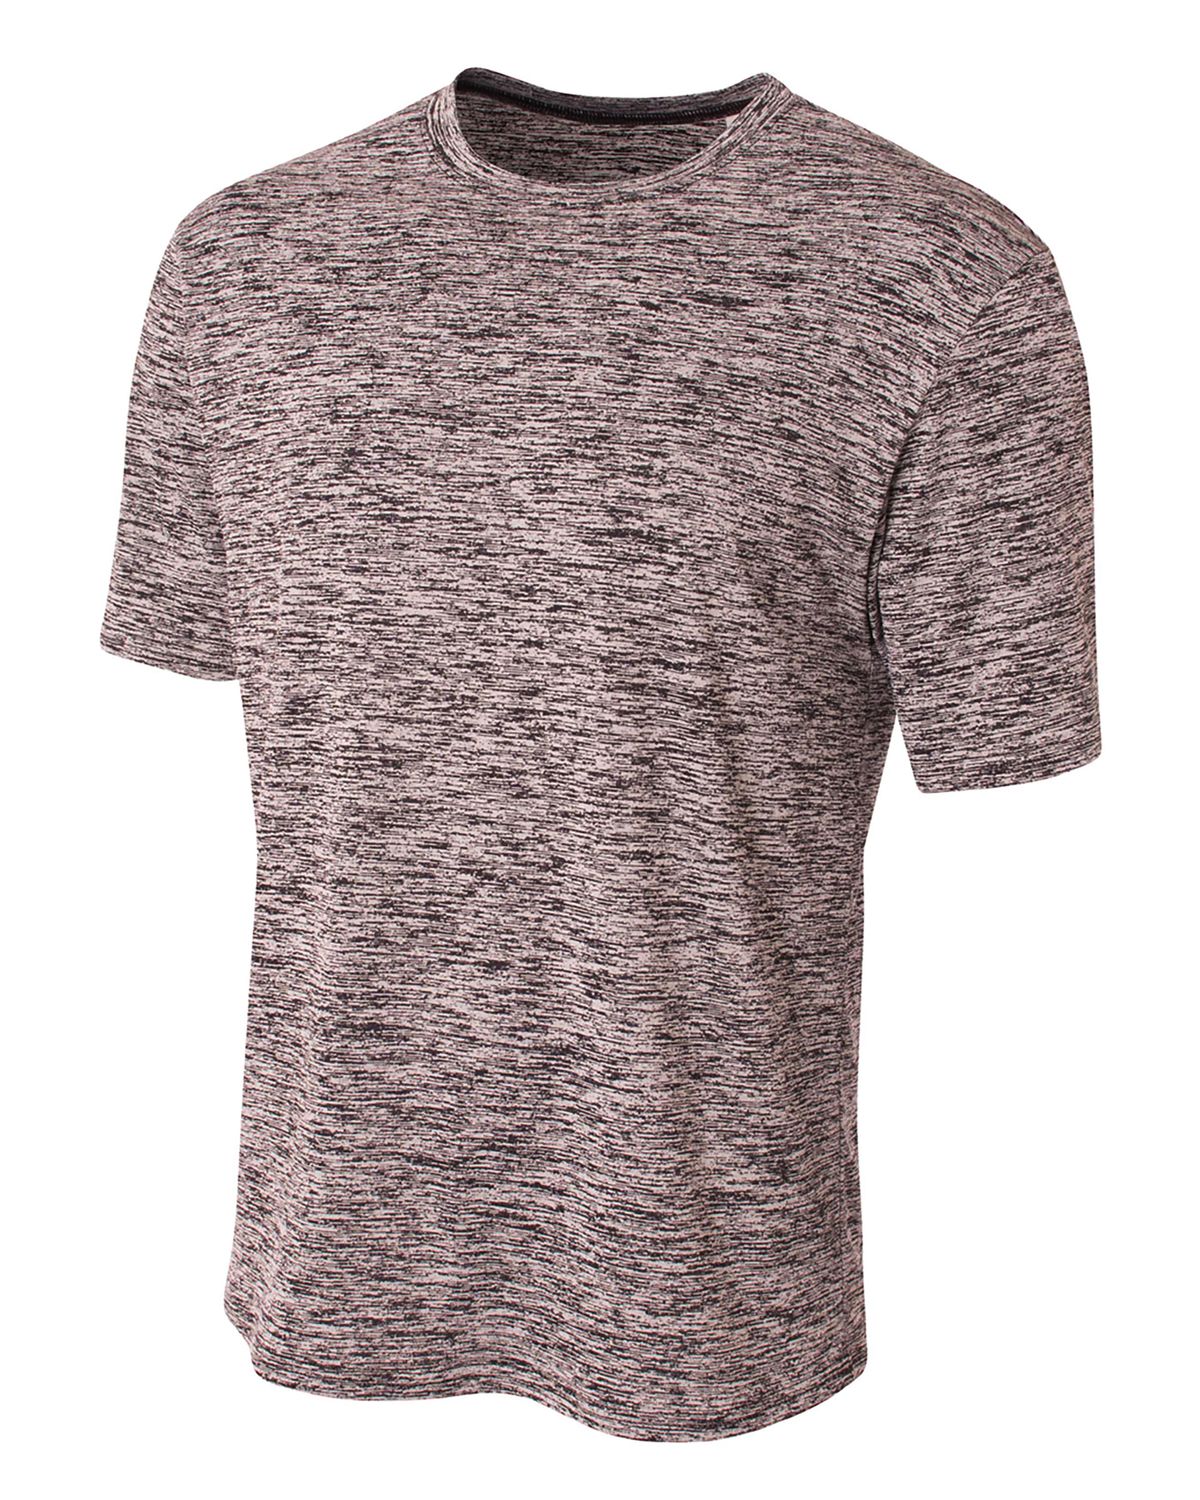 'A4 N3296 Men's Polyester Space Dye T-Shirt'